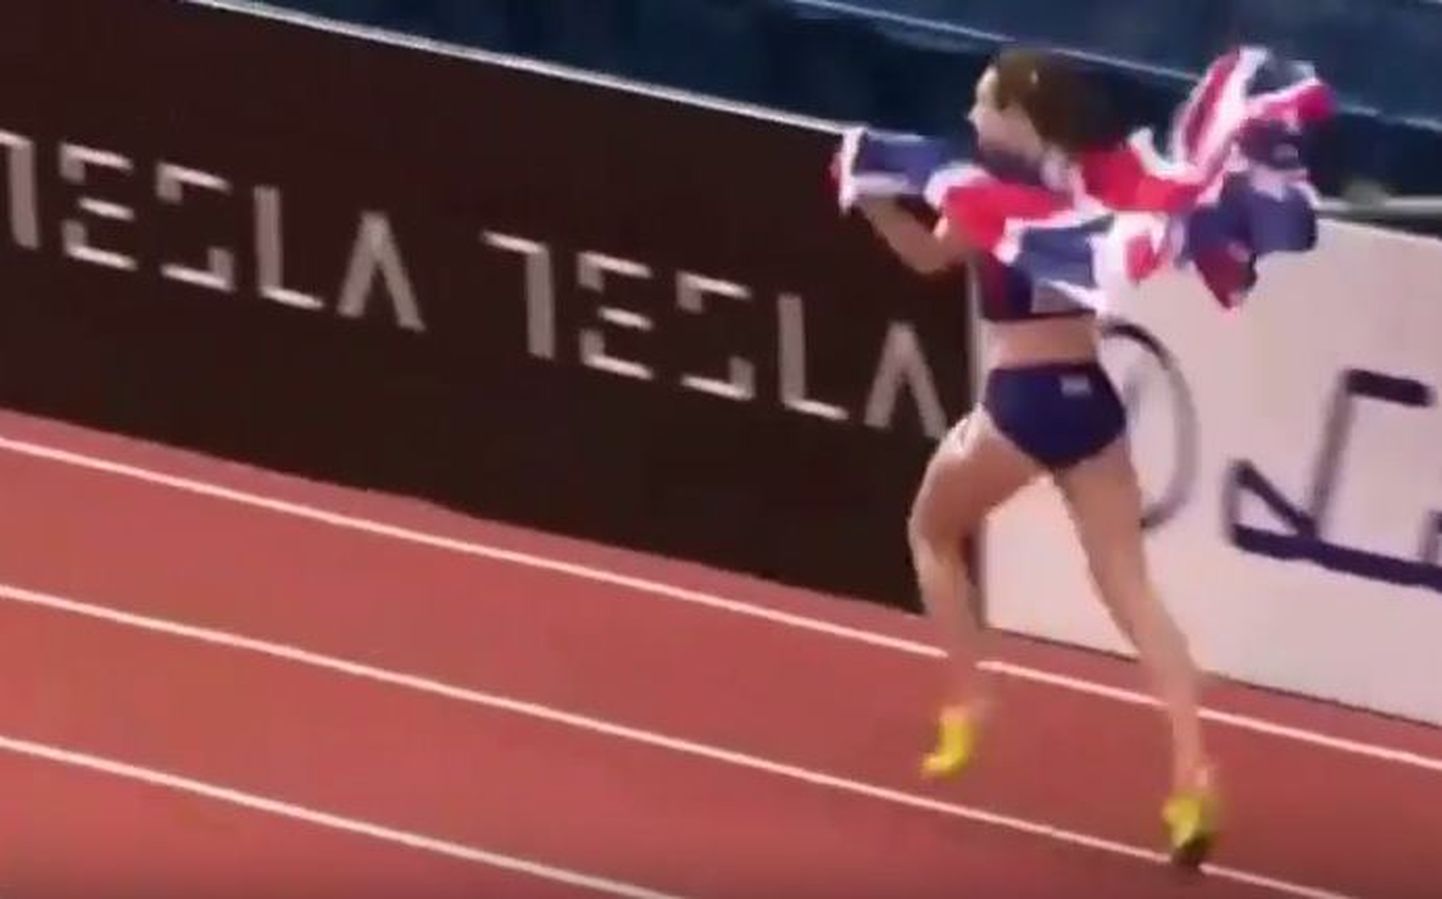 Британская легкоатлетка Лора Мьюр вопреки запрету организаторов сделала круг почета после победы на дистанции 1500 метров на чемпионате Европы в Белграде.